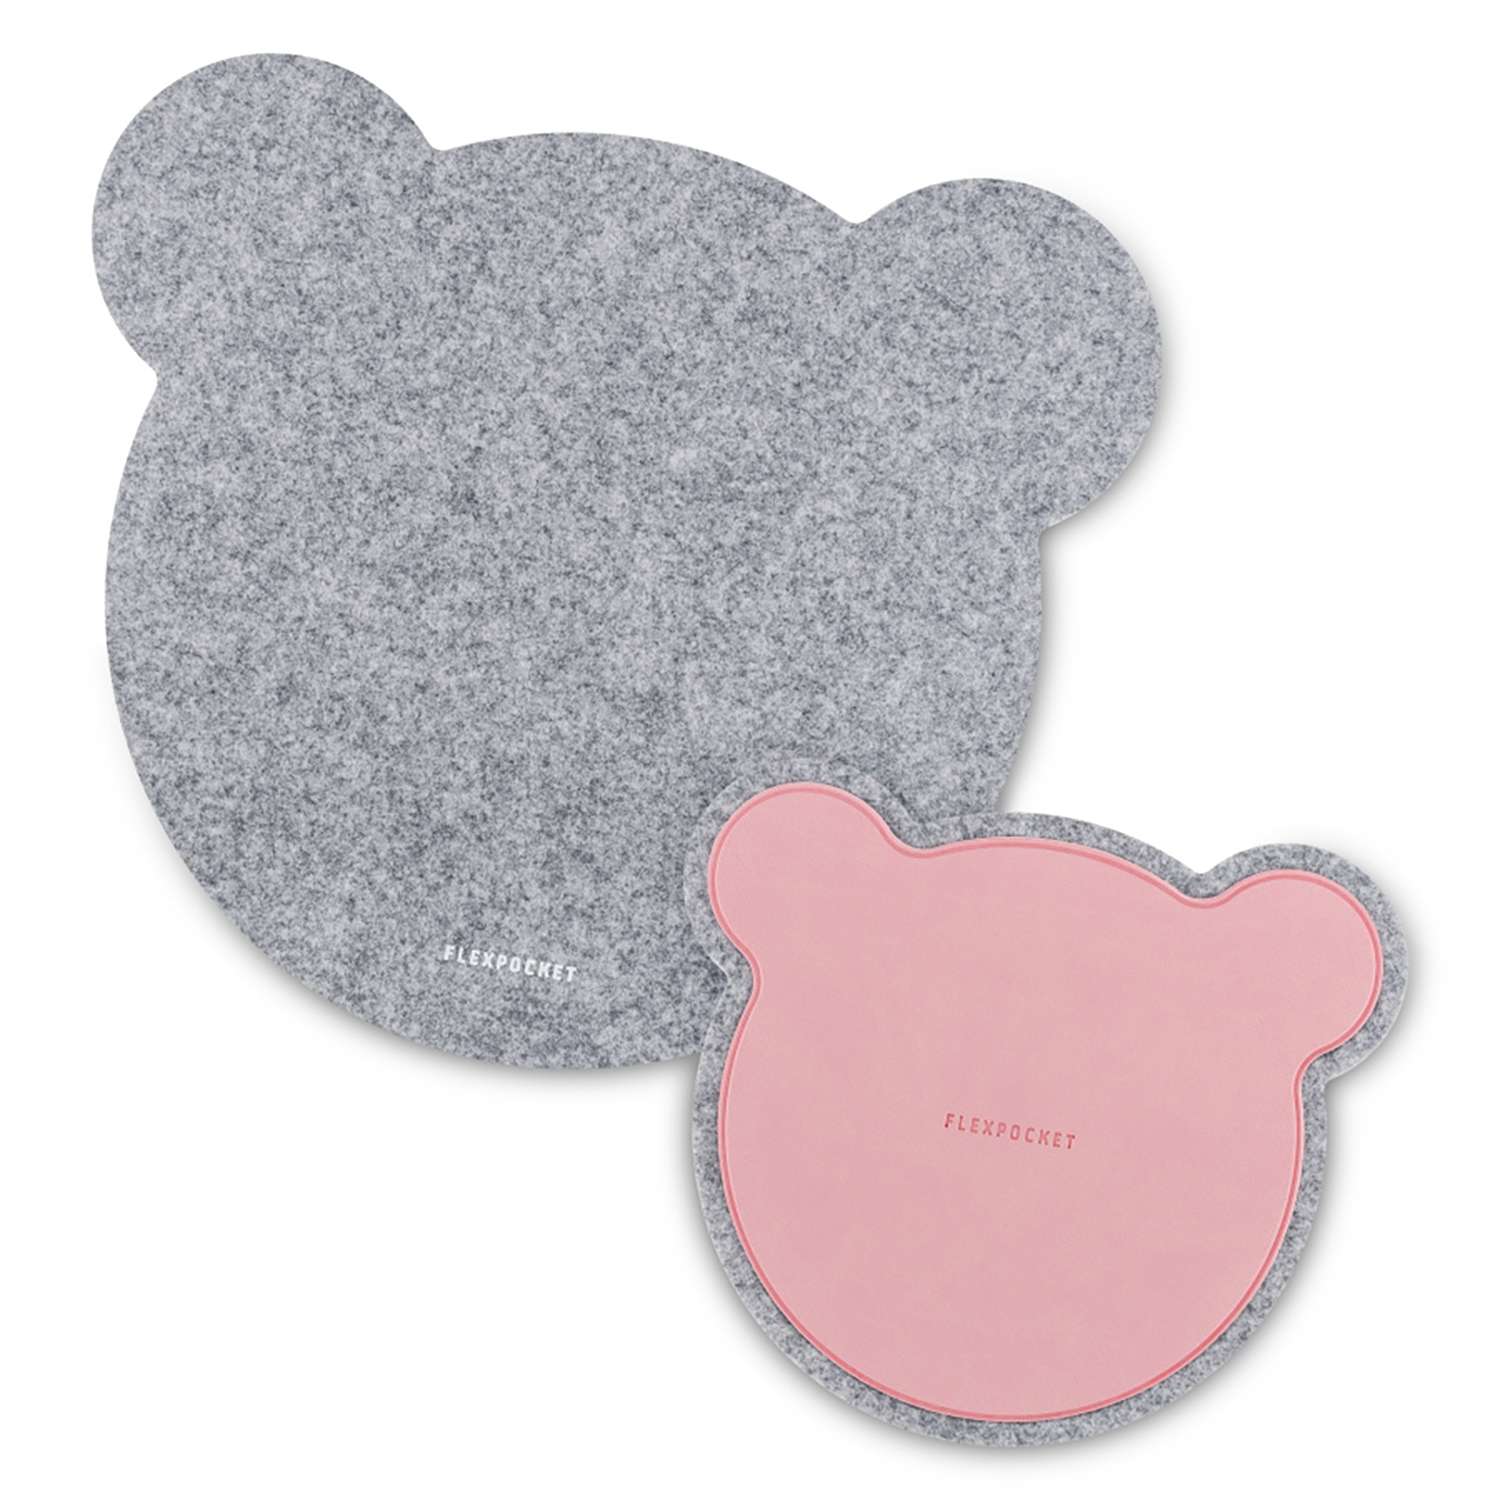 Настольный коврик Flexpocket для мыши в виде медведя с подставкой под кружку светло-серый - фото 1